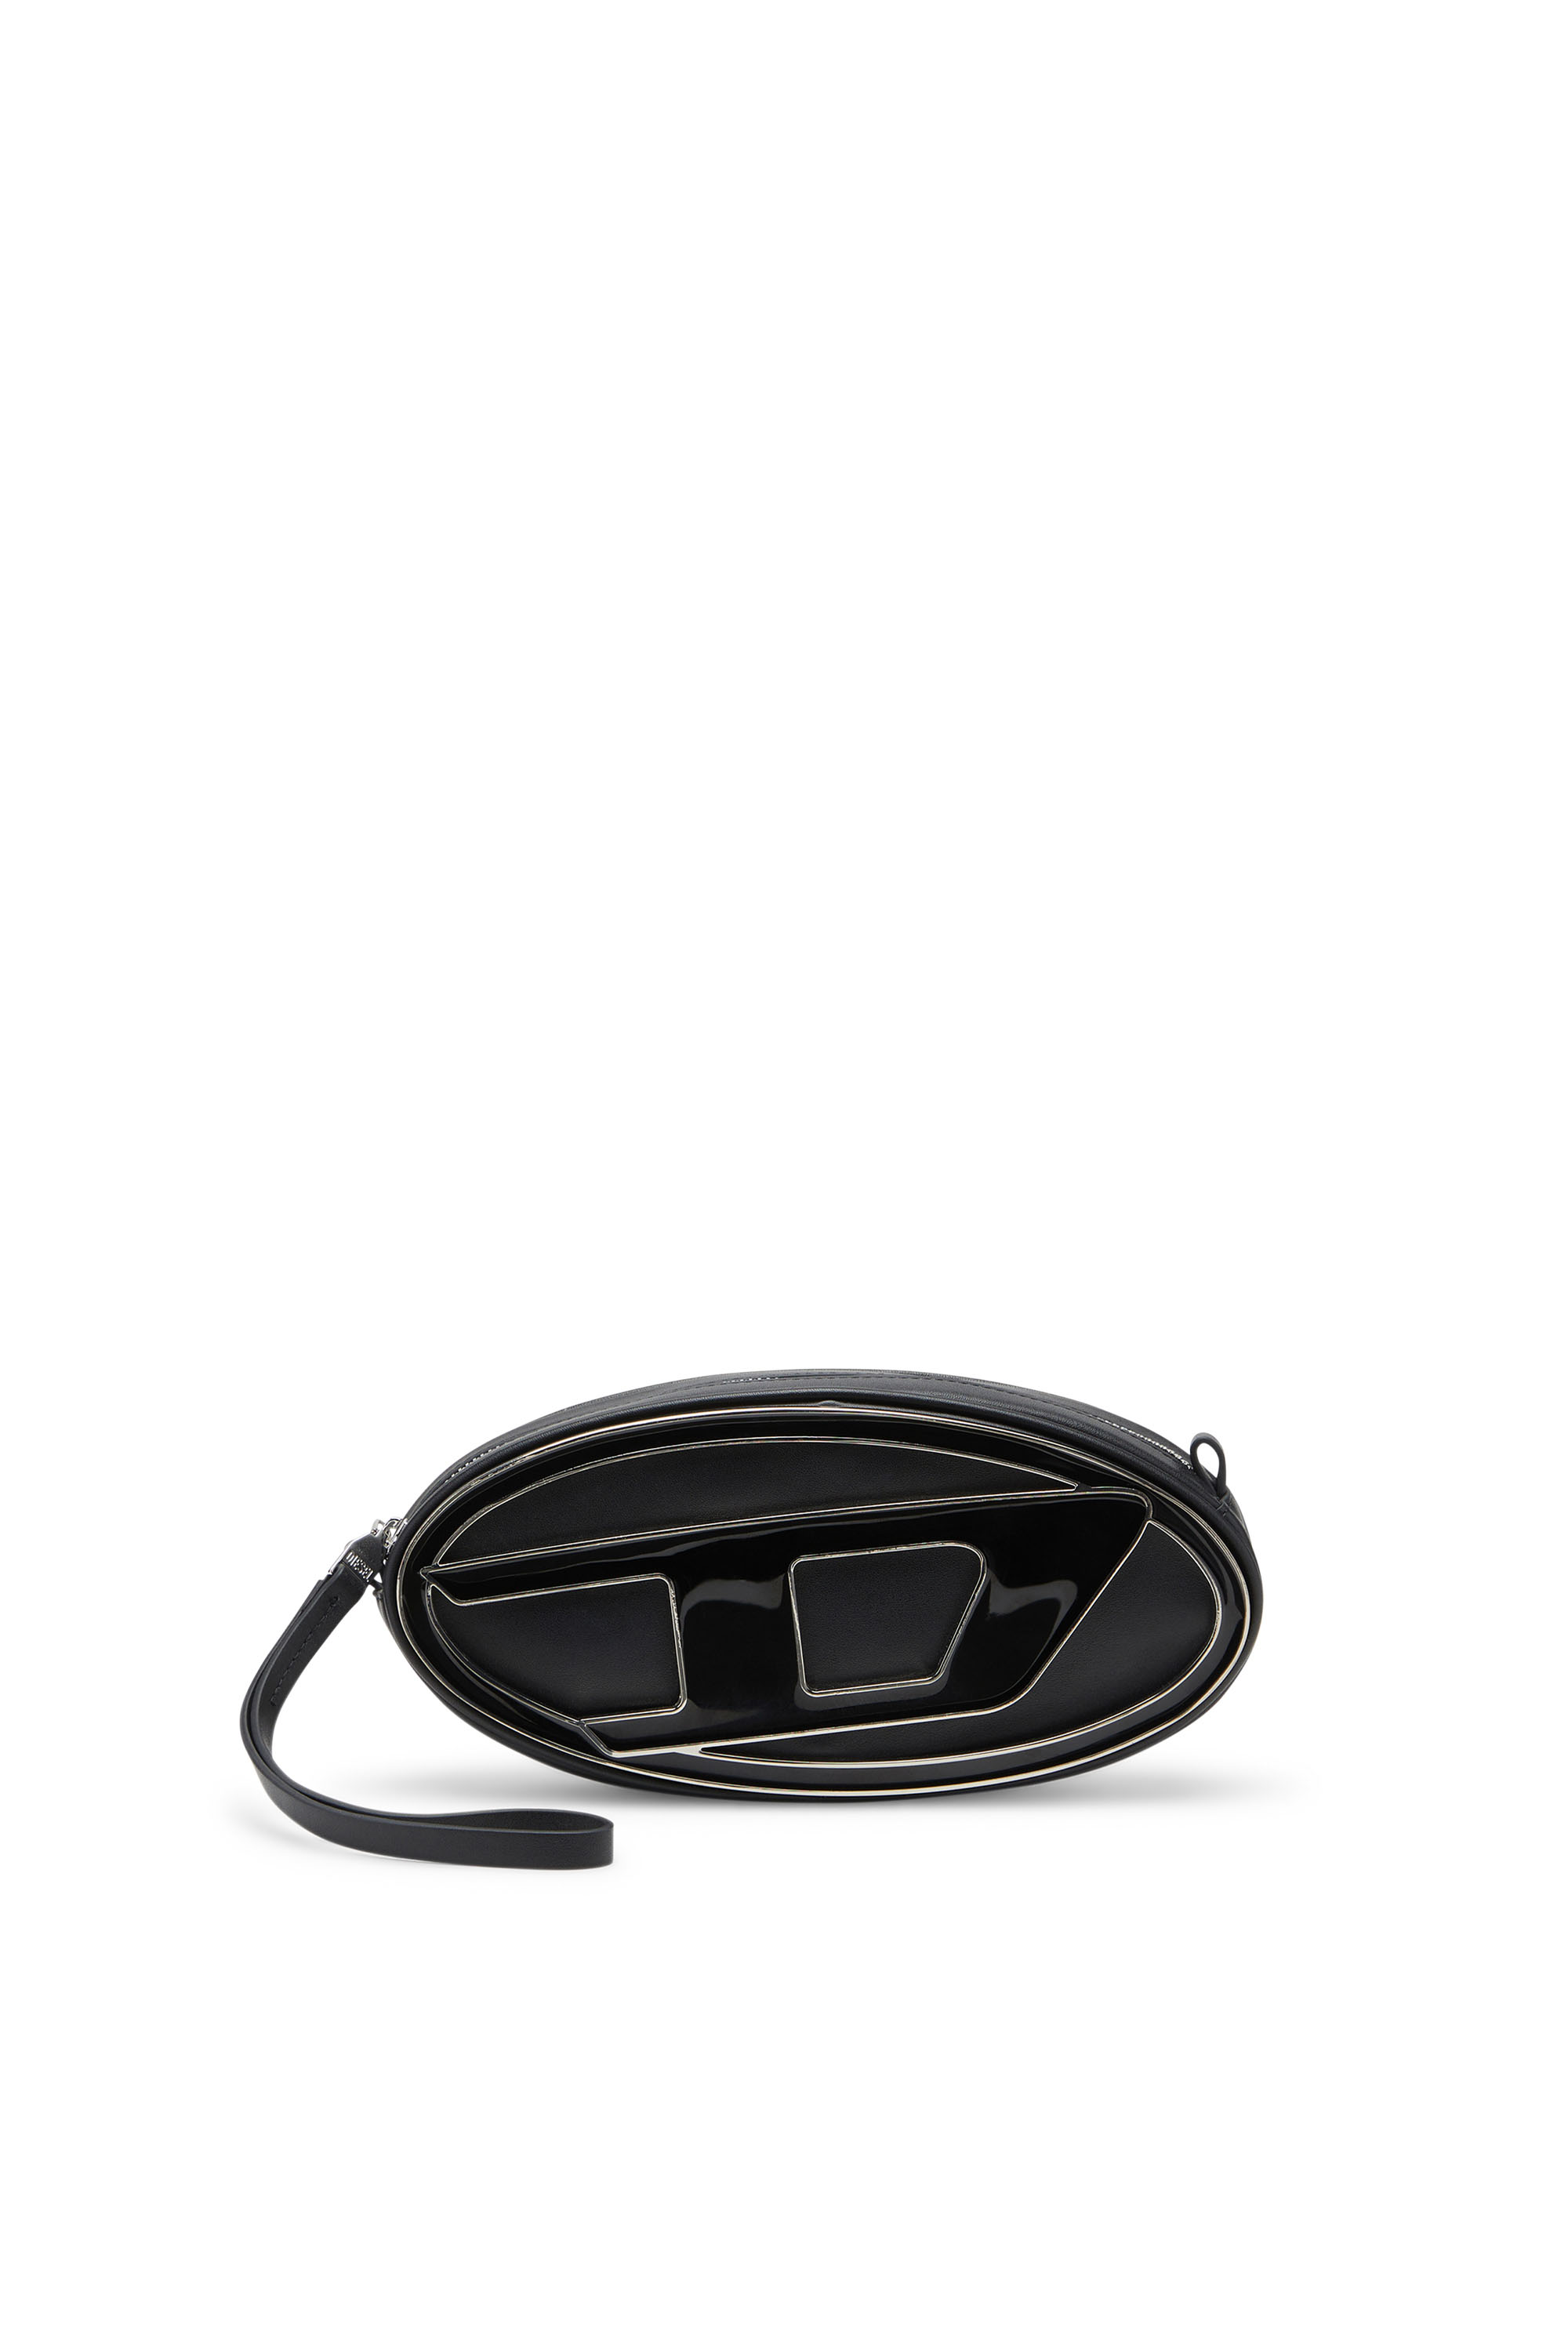 Diesel - 1DR-Pouch - Bandolera pequeña de cuero con placa con logotipo - Bolso cruzados - Mujer - Negro